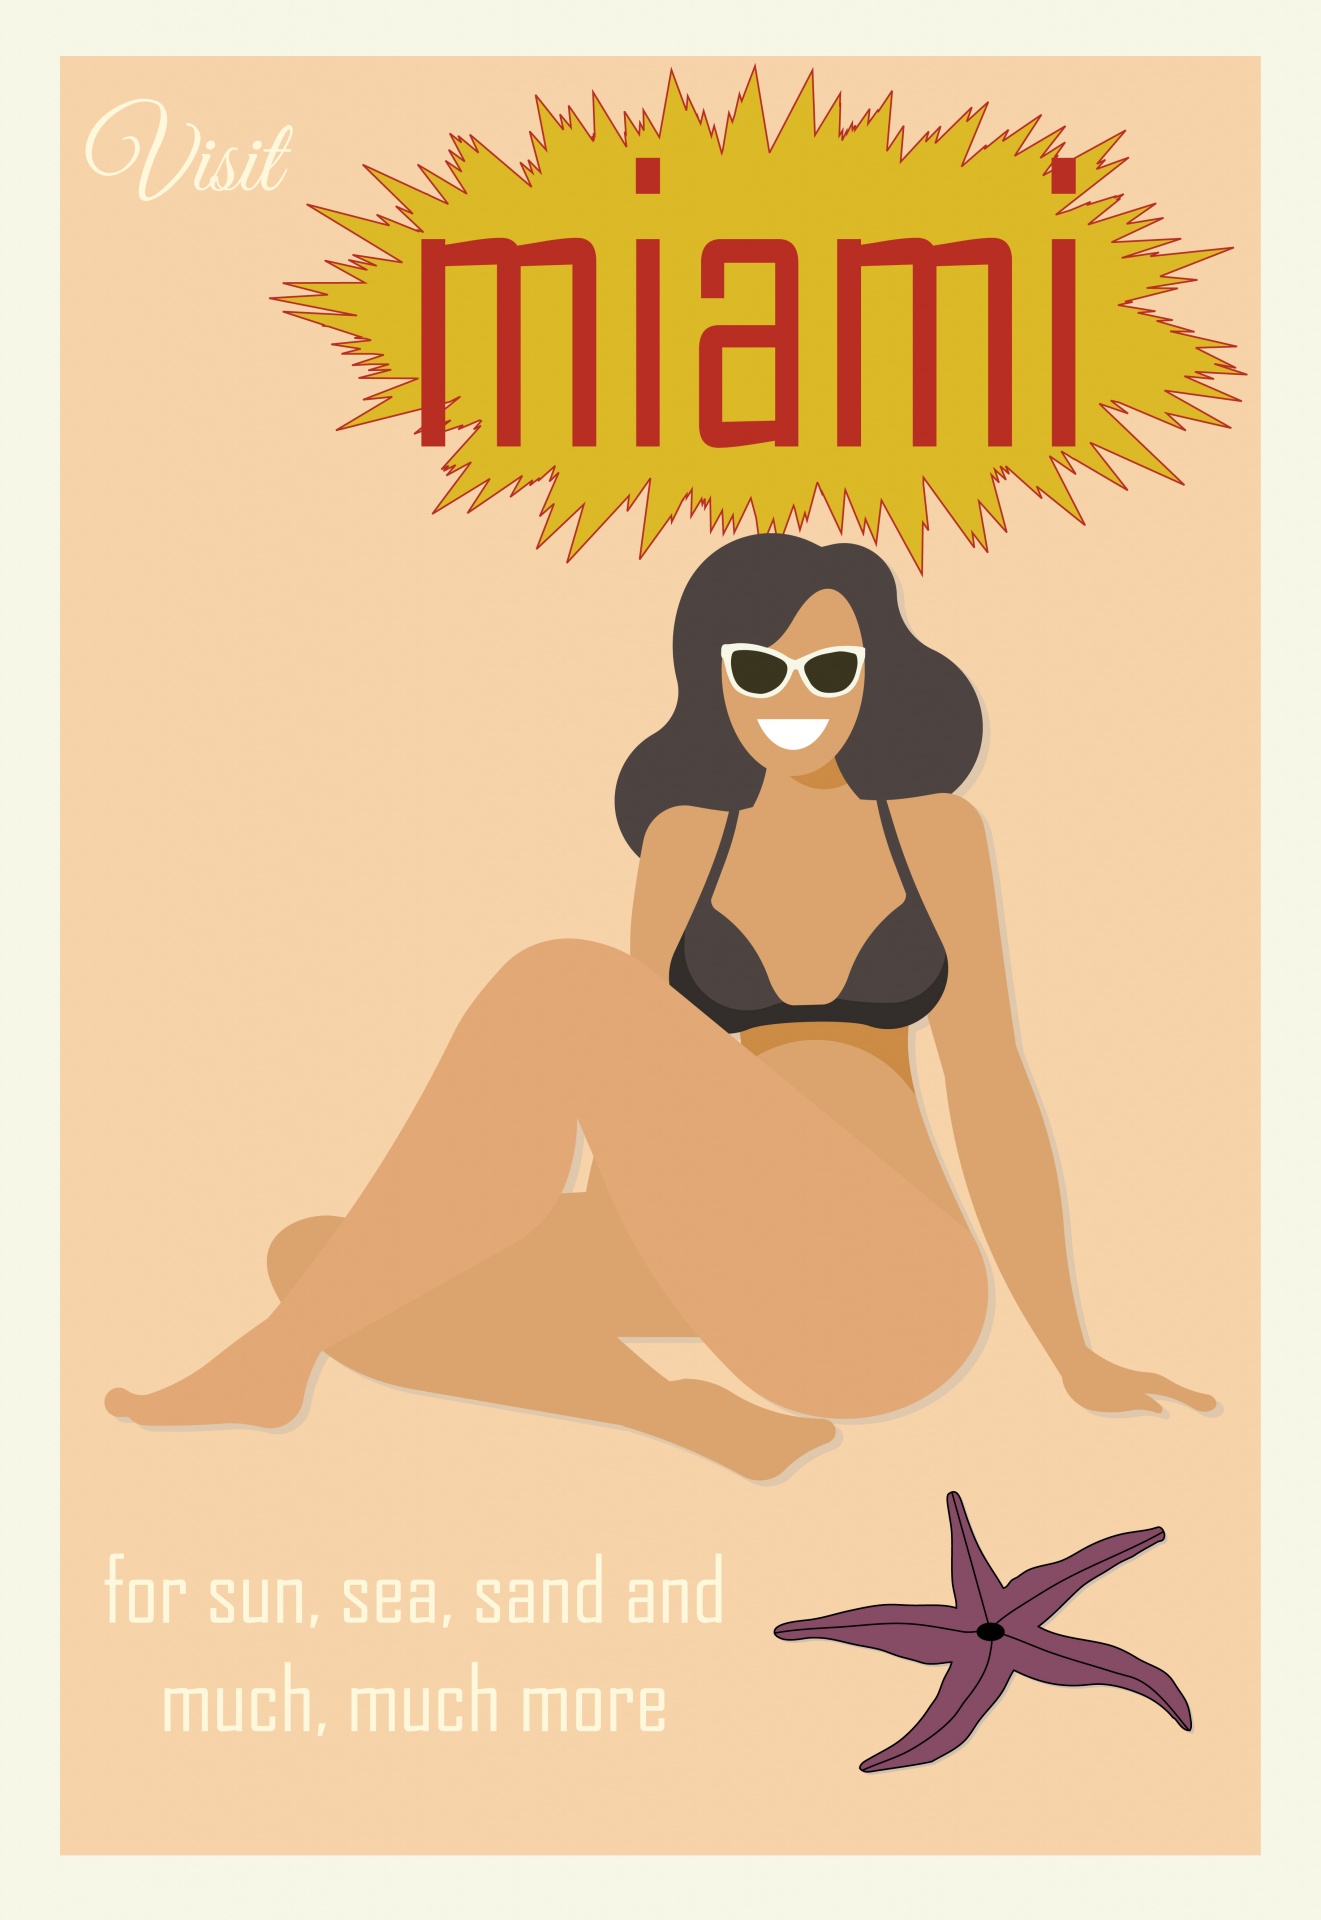 Miami Travel Poster America